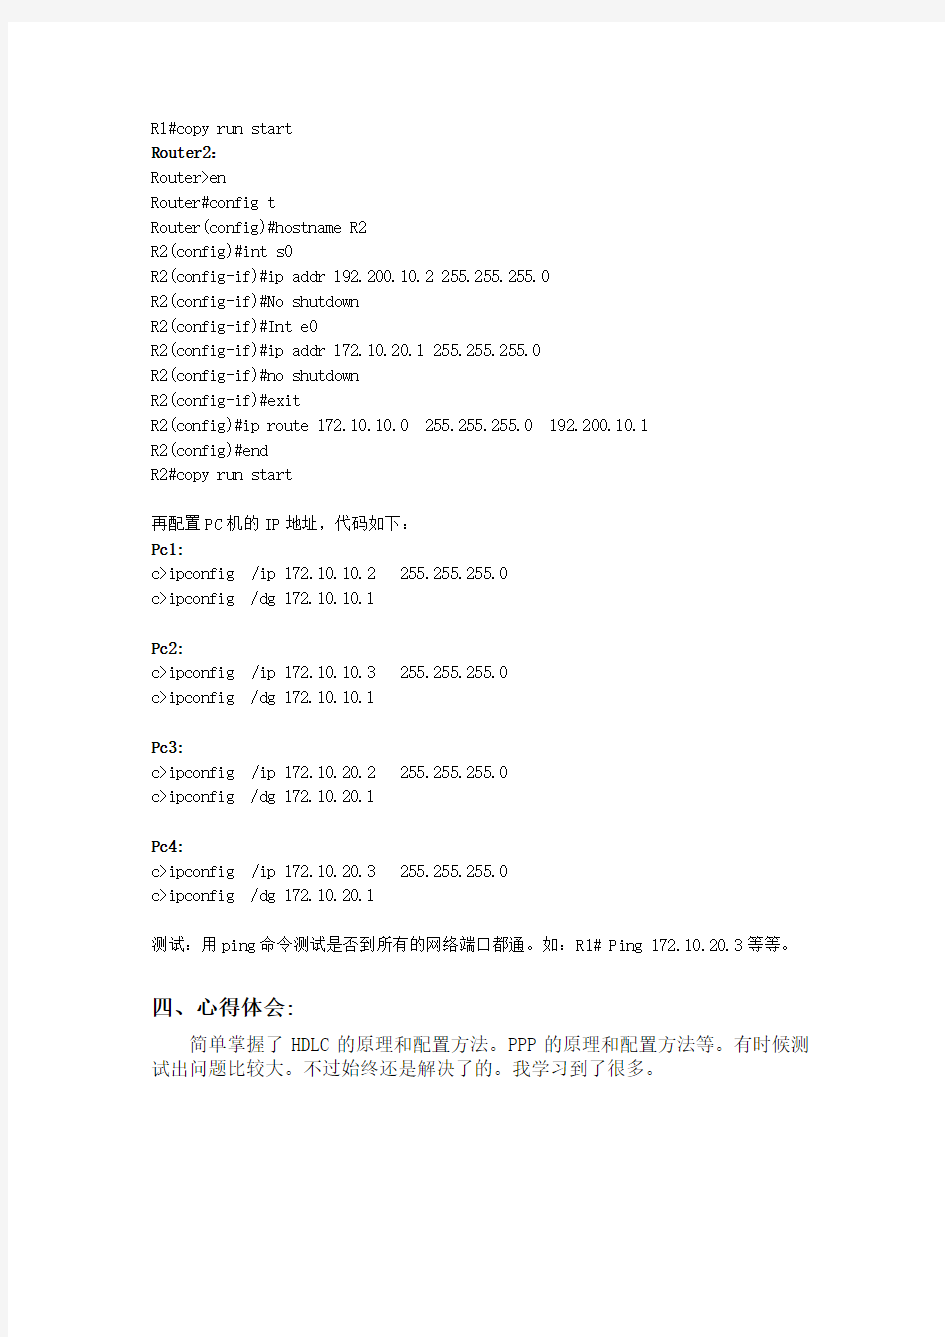 重庆邮电大学计算机网络第九次实验报告